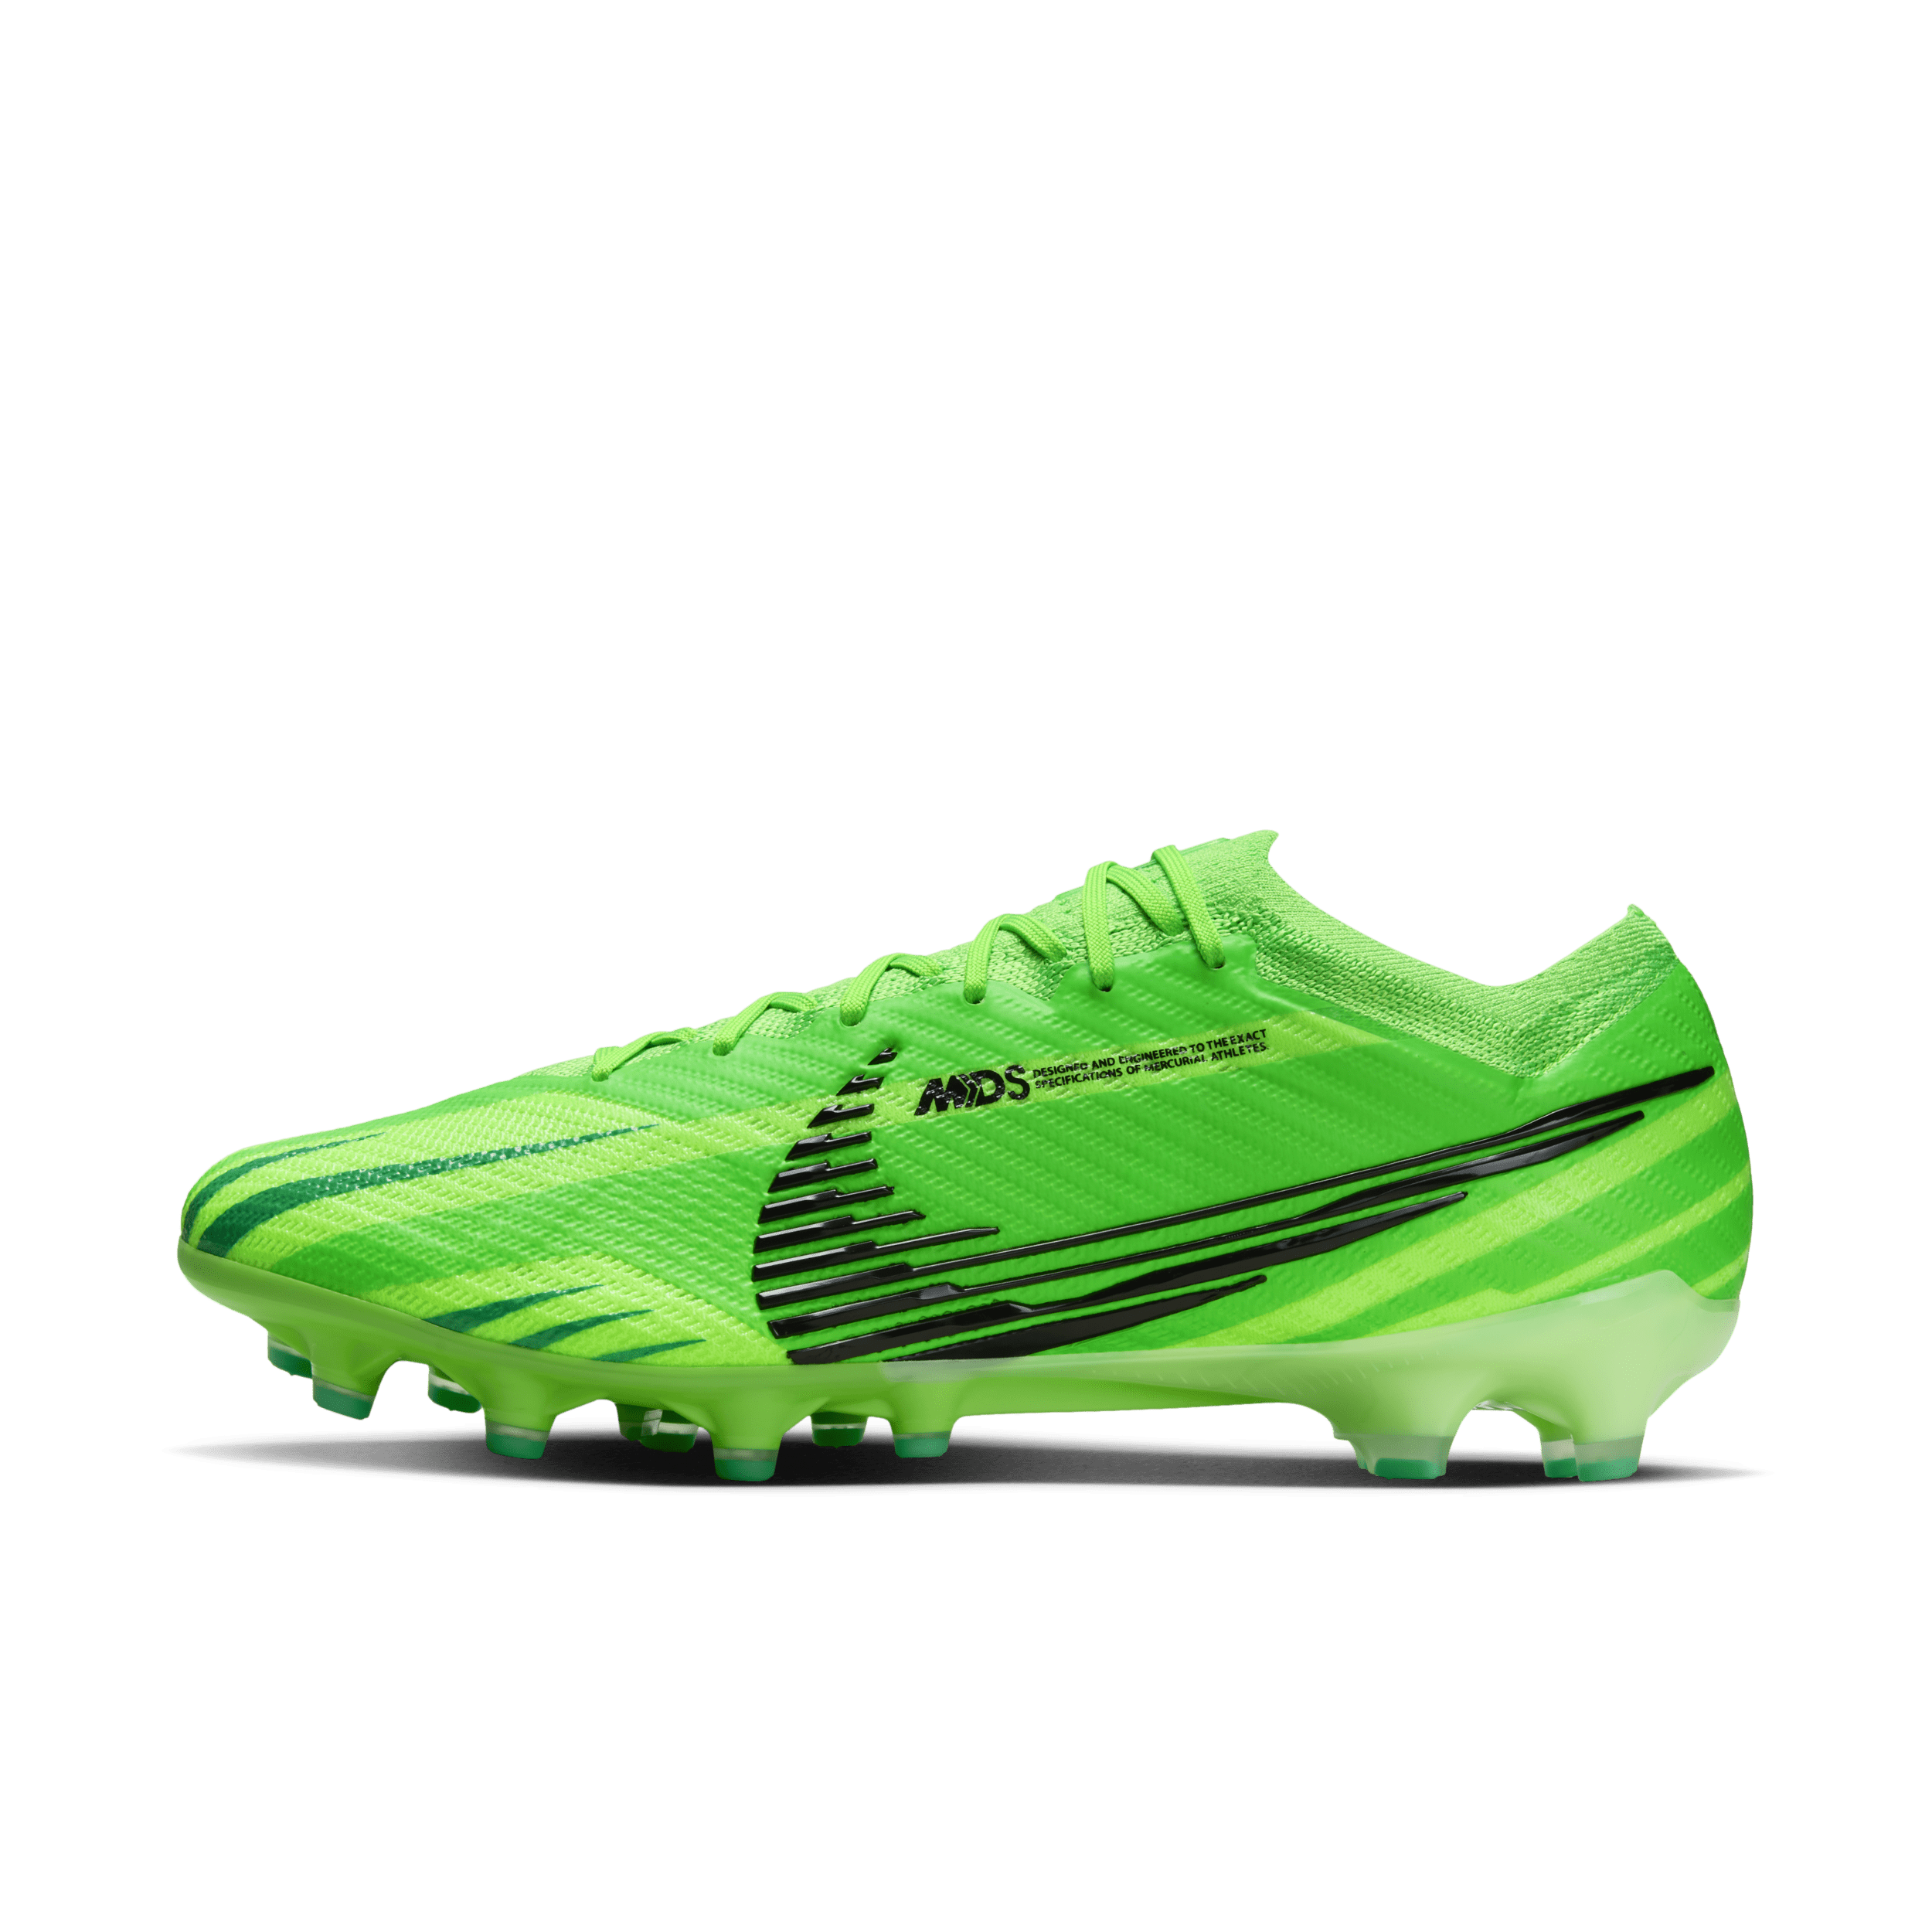 Nike Vapor 15 Elite Mercurial Dream Speed low-top voetbalschoenen (kunstgras) - Groen